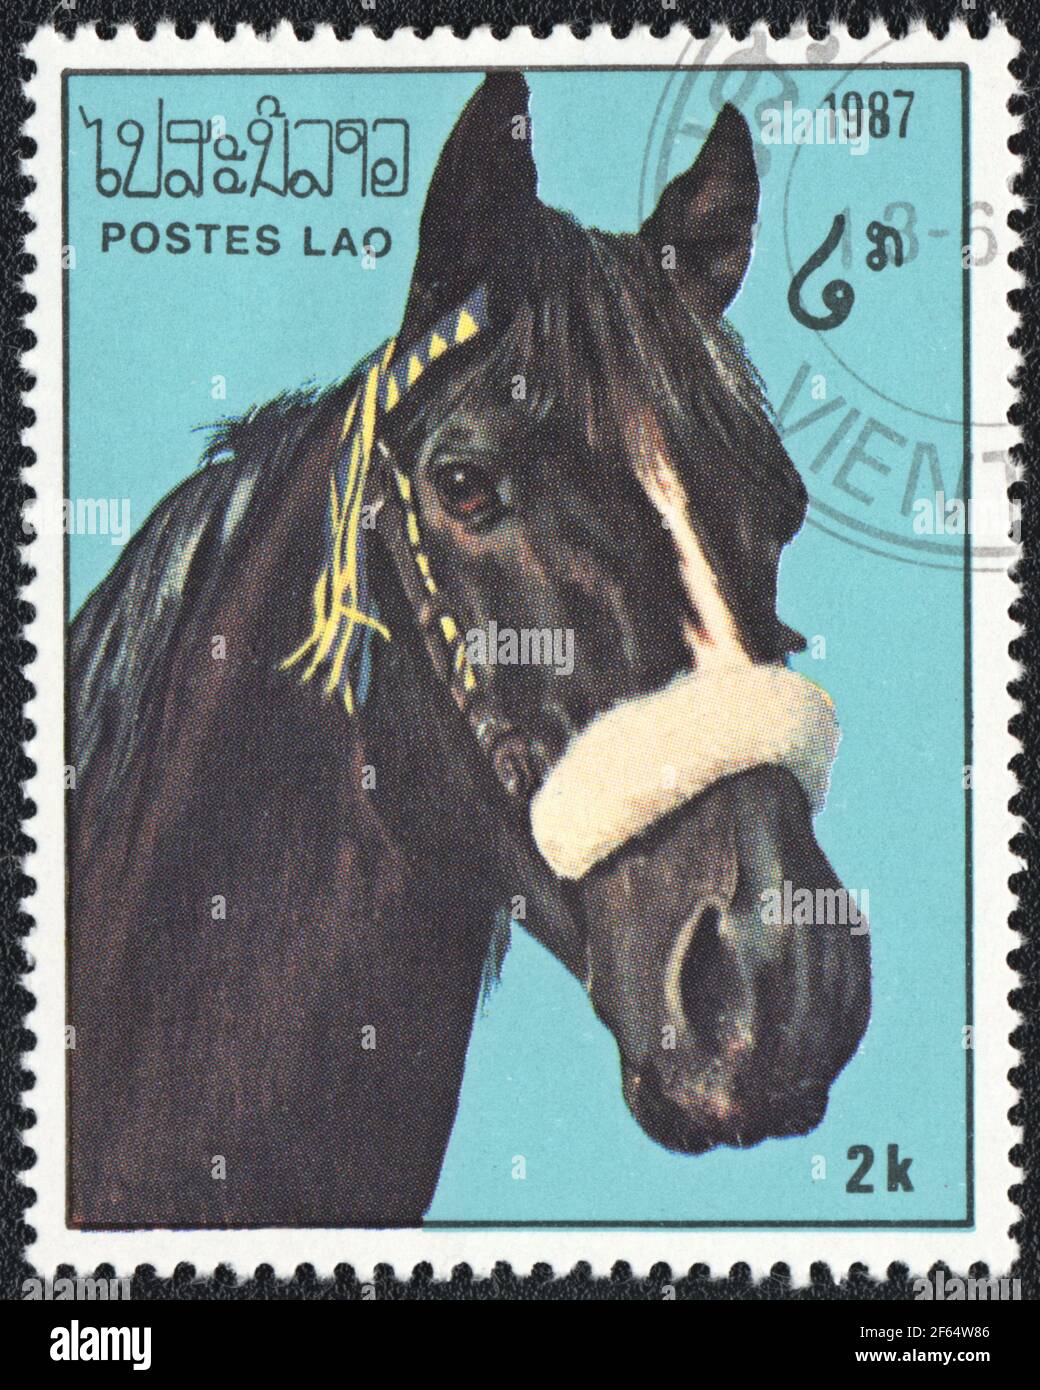 Un timbre-poste montre un cheval noir avec blanc (Equus ferus cabalus) de la série: Chevaux pur-sang, Laos, 1987 Banque D'Images